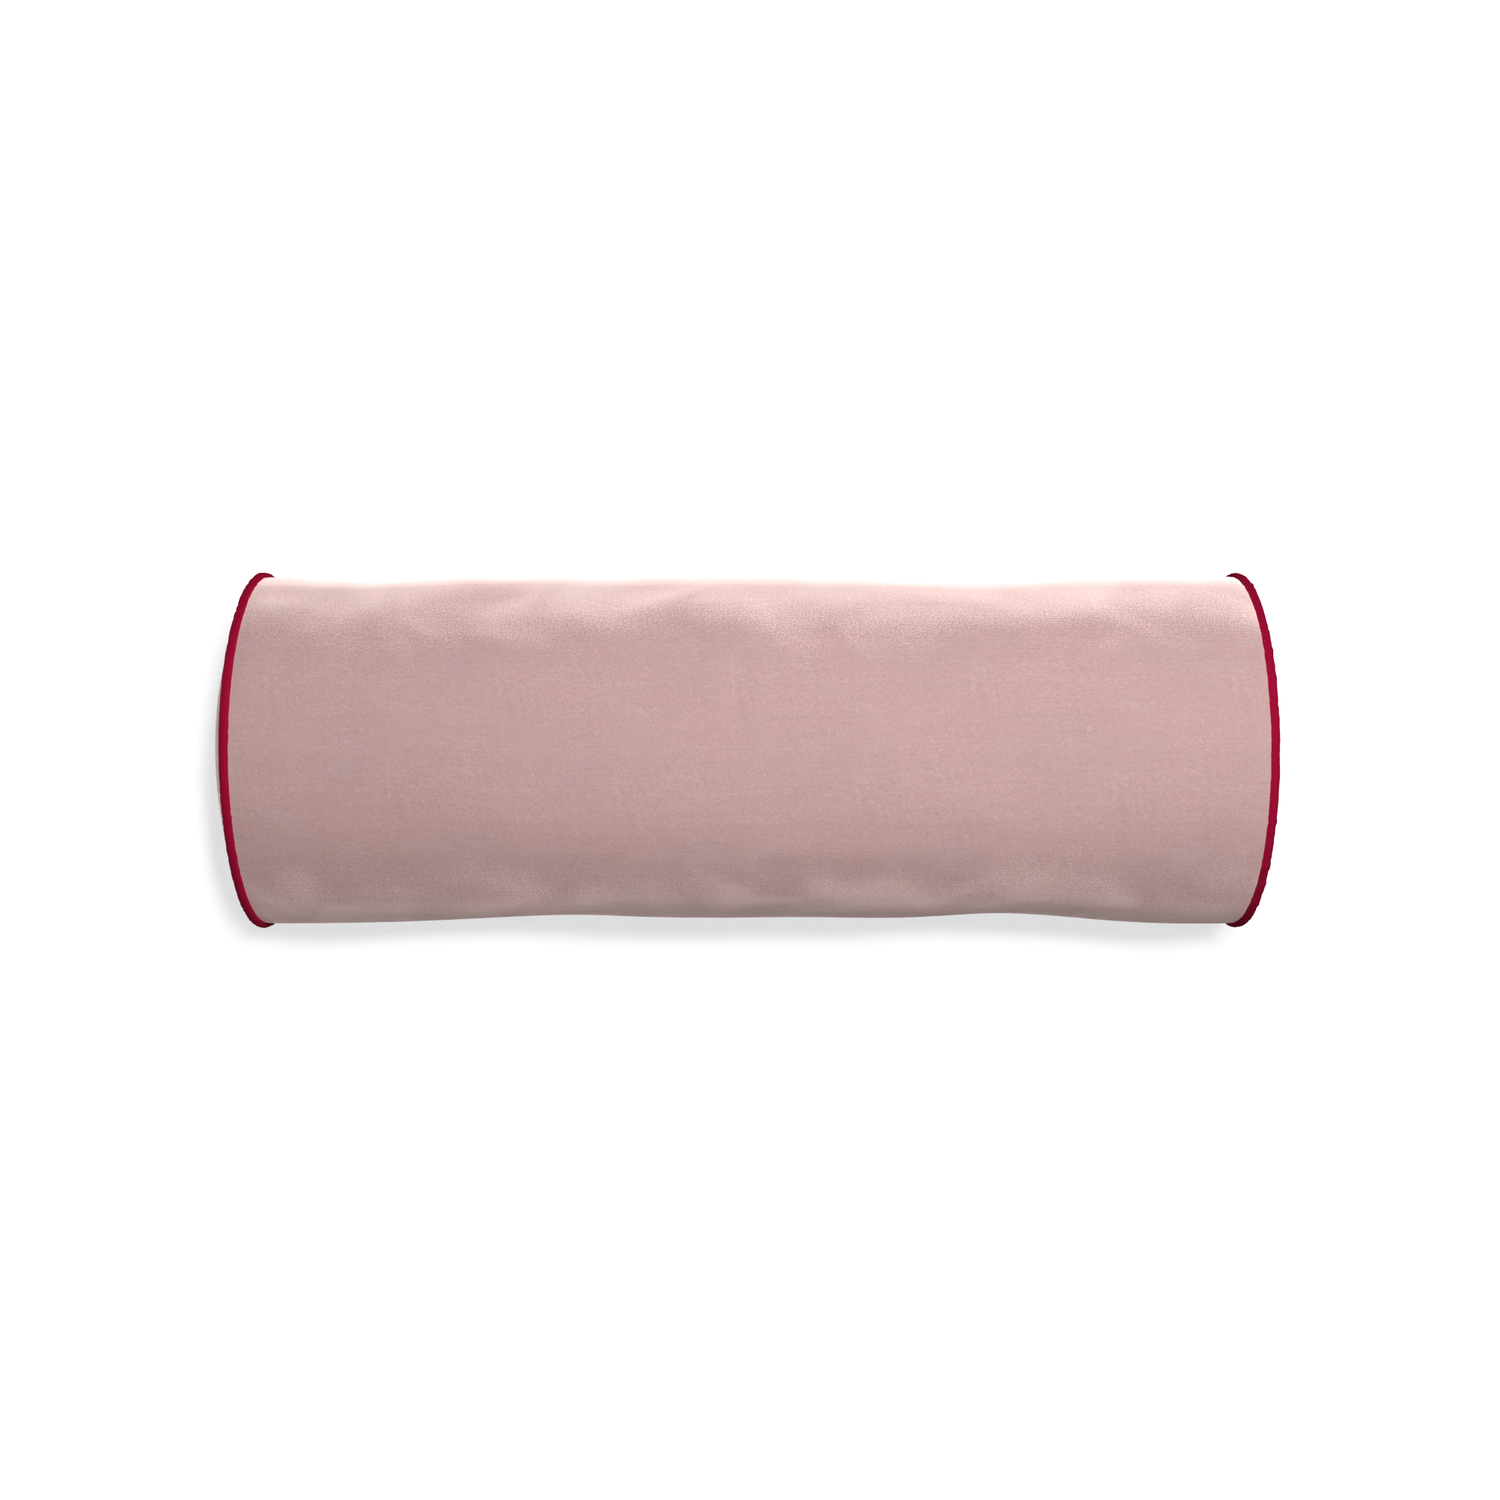 Bolster mauve velvet custom pillow with raspberry piping on white background